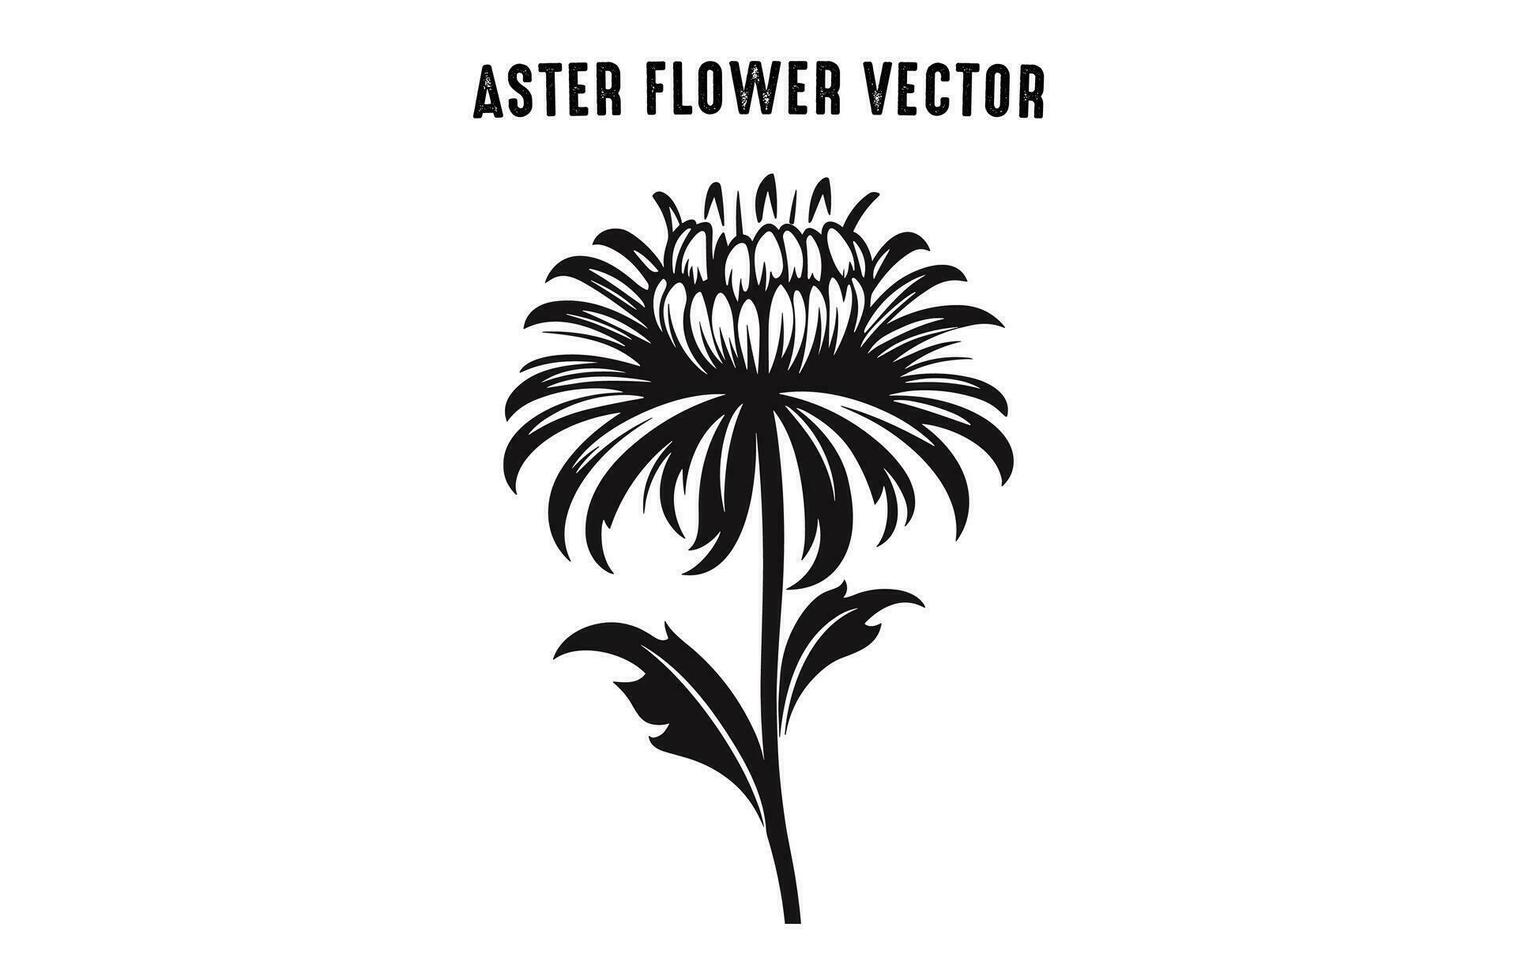 aster blomma silhuett vektor uppsättning, aster blommor ClipArt bunt